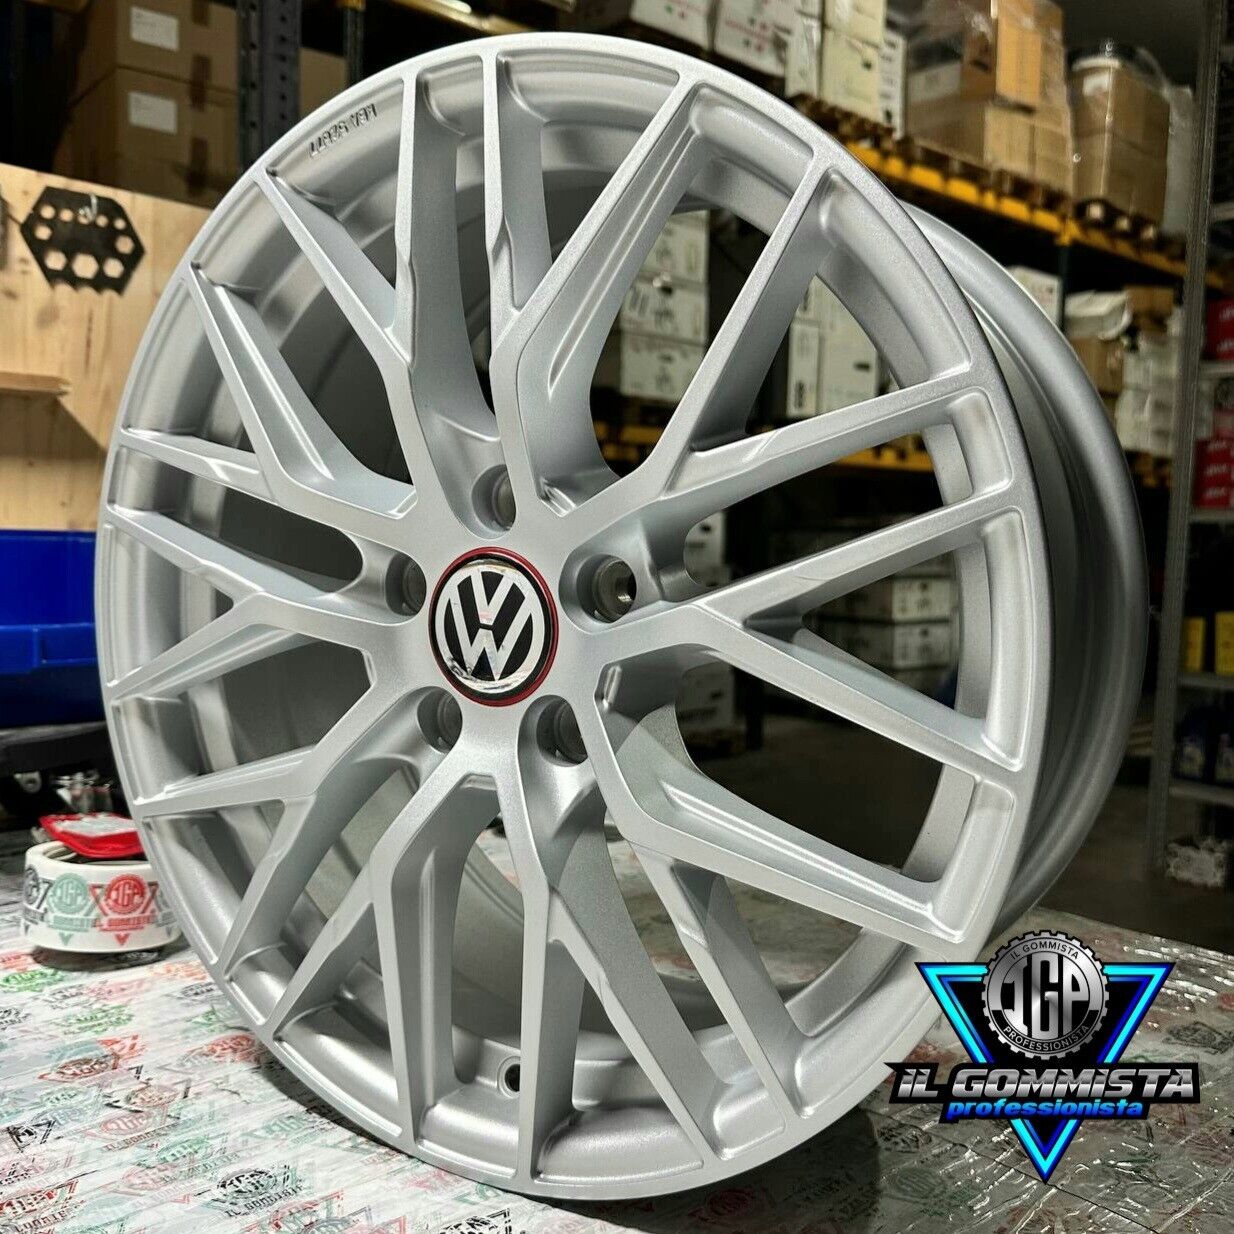 IGP RS4 KIT 4 Cerchi In Lega 7,5 x 17 Compatibili con Volkswagen Arte –  ilgommistaprofessionista